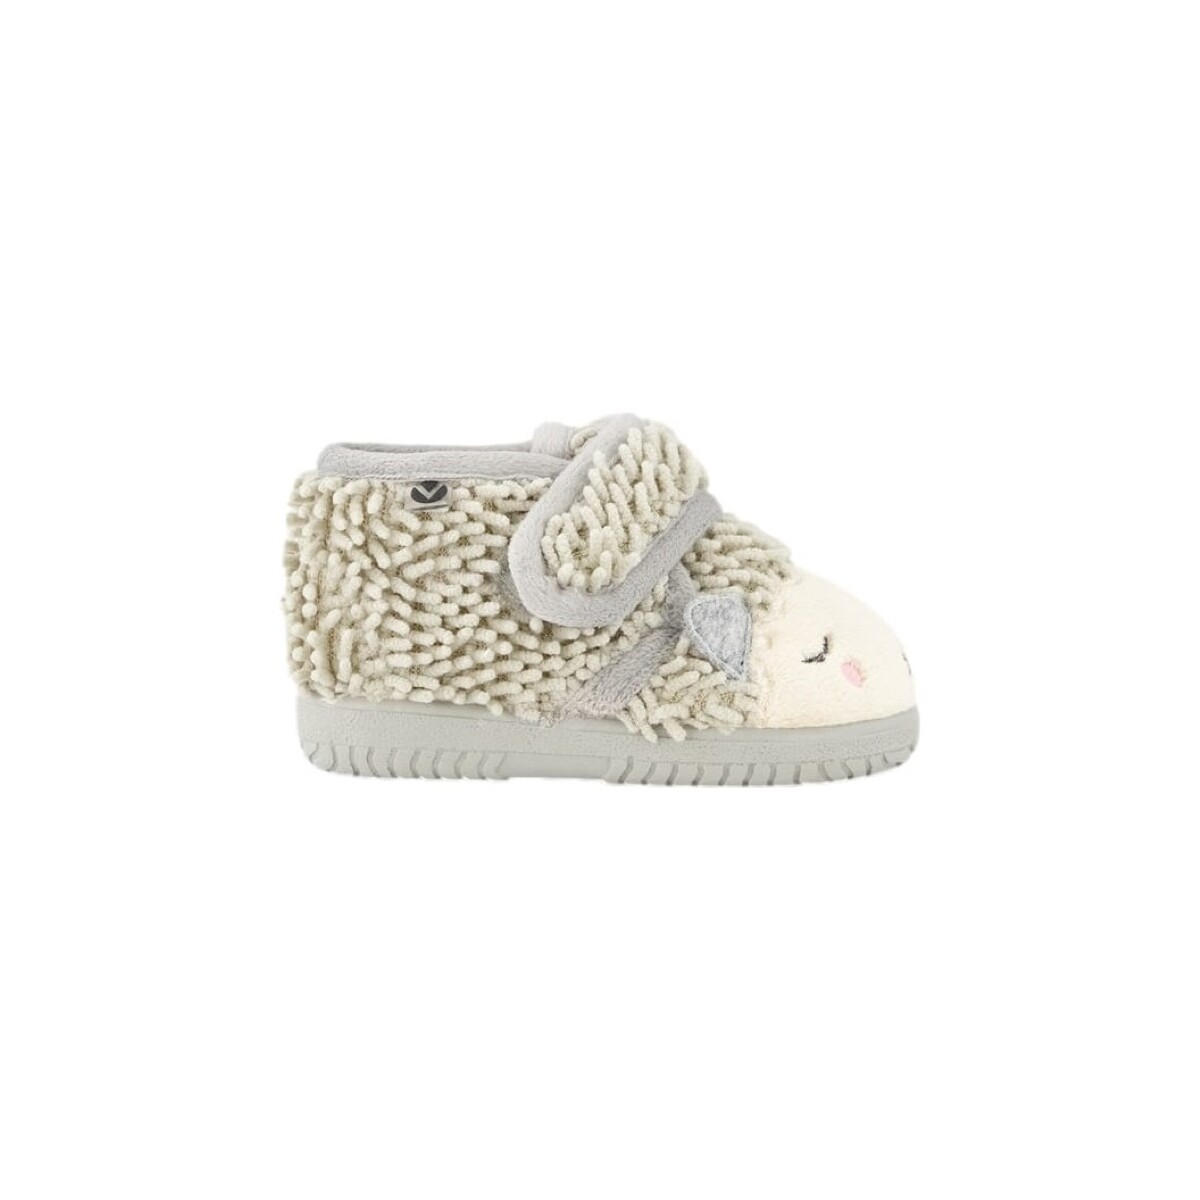 Σοσονάκια μωρού Victoria Baby Shoes 05119 – Piedra